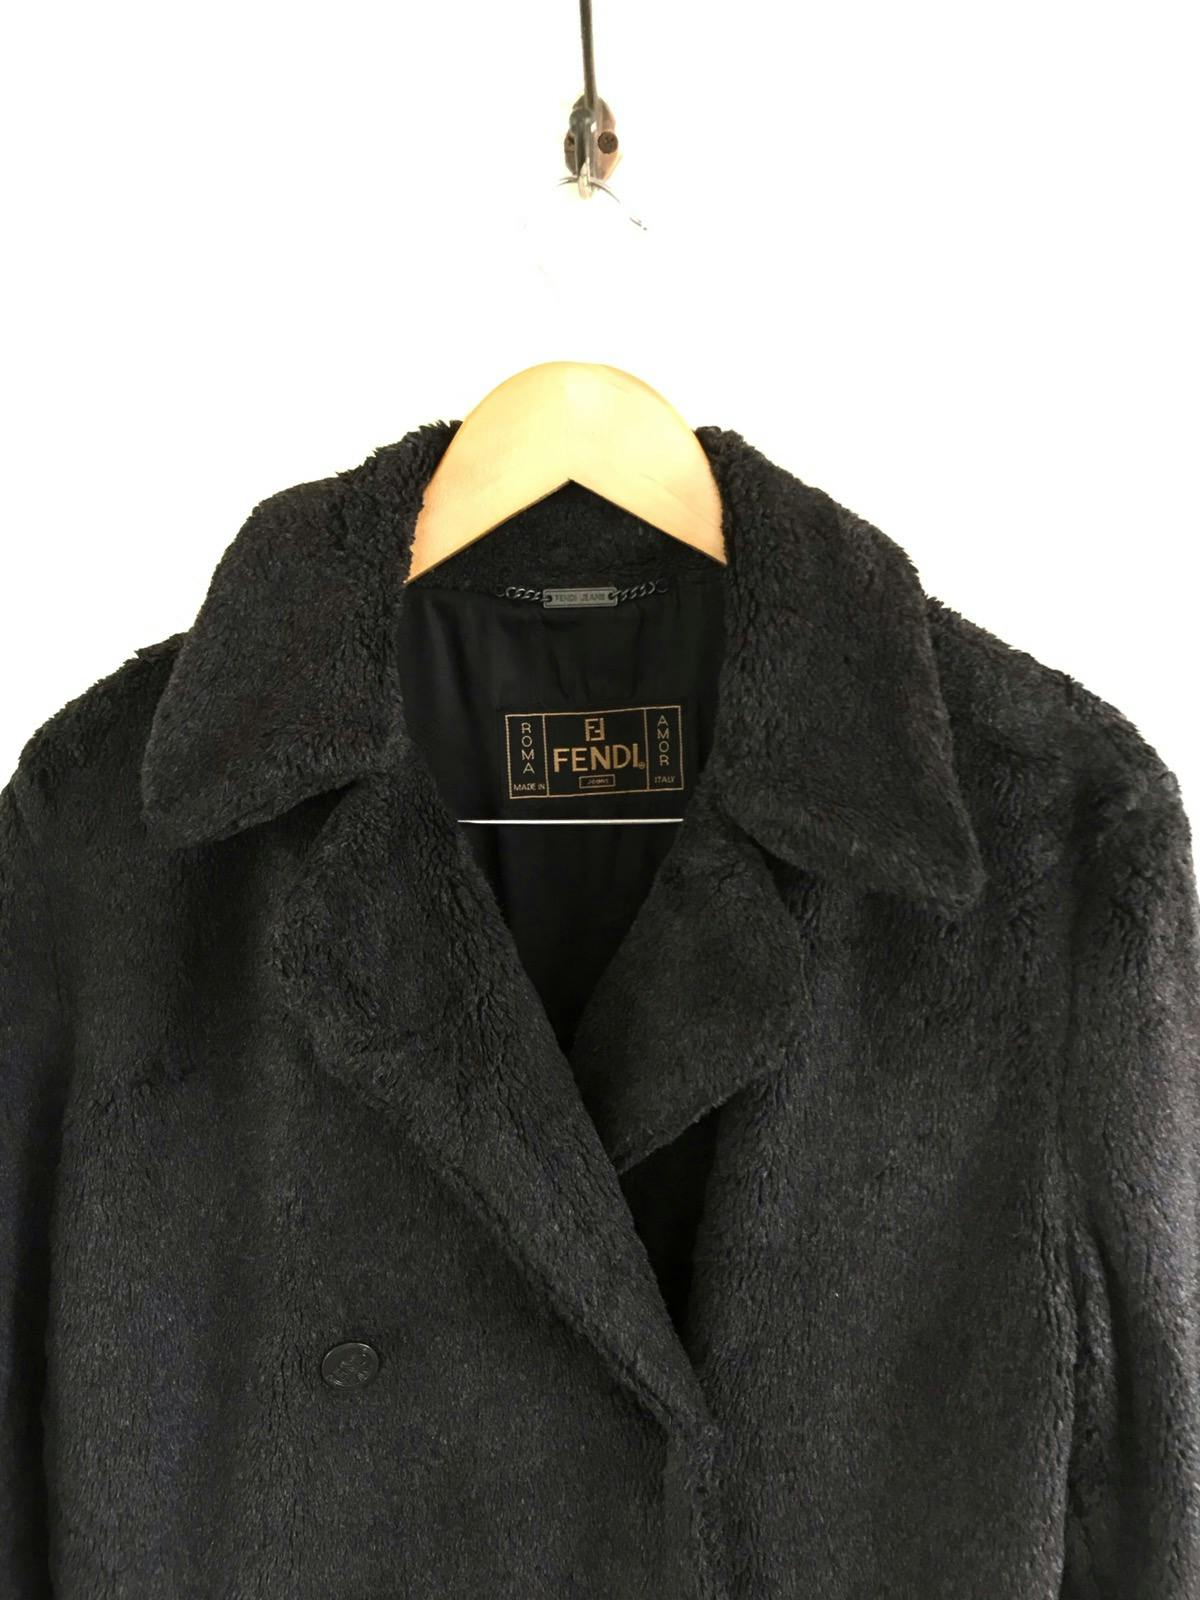 FENDI Jeans Boa Coat/ Fur Jacket Made in Italy - 2